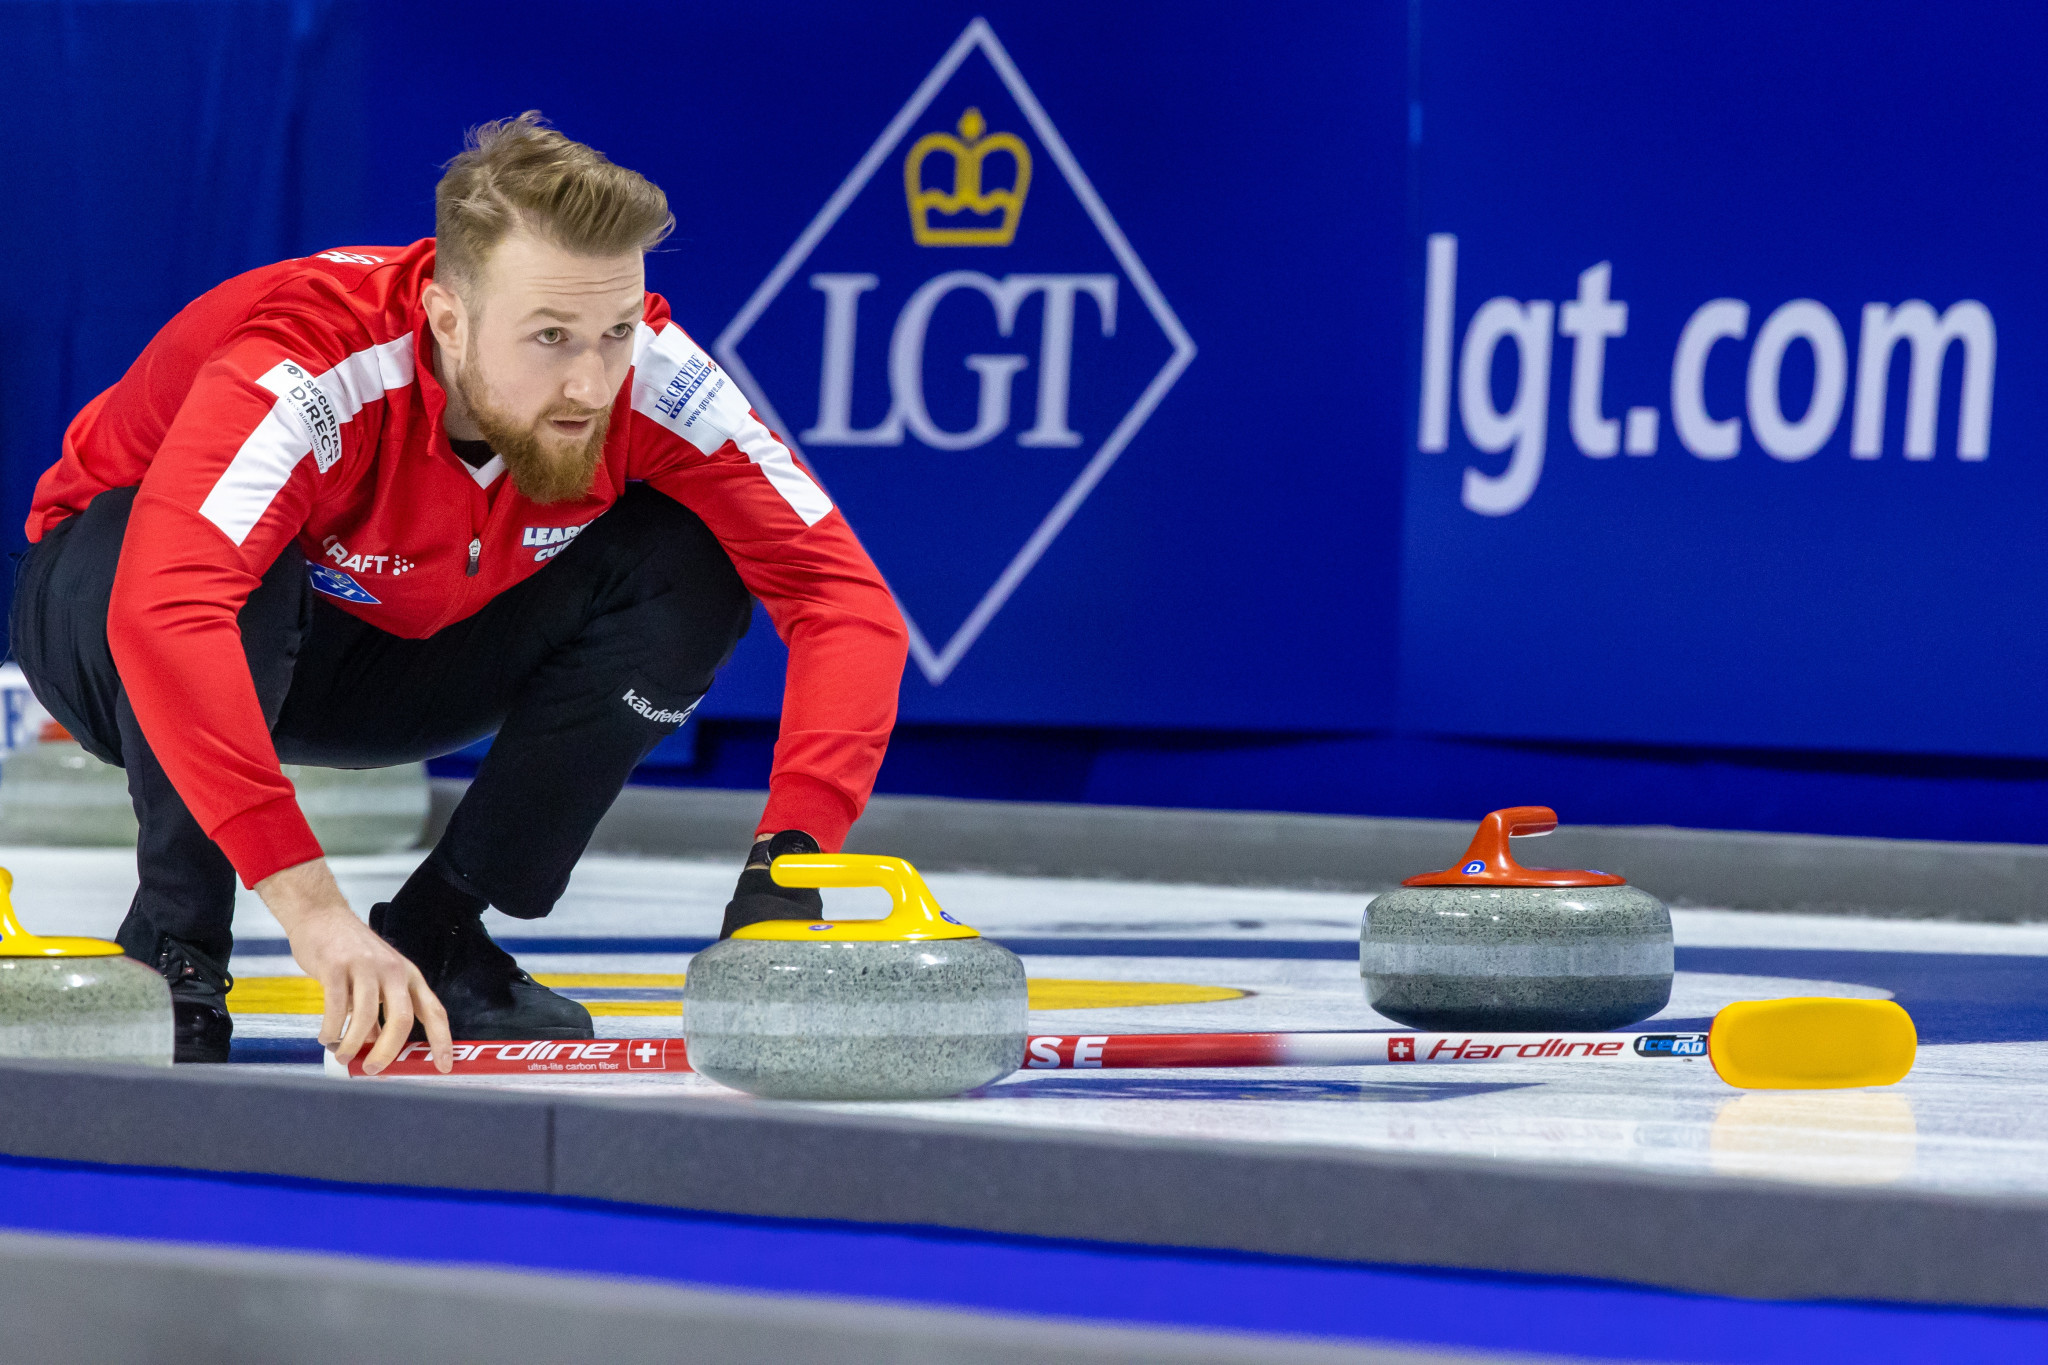 Switzerland through to World Men's Curling Championship playoffs after Dutch win